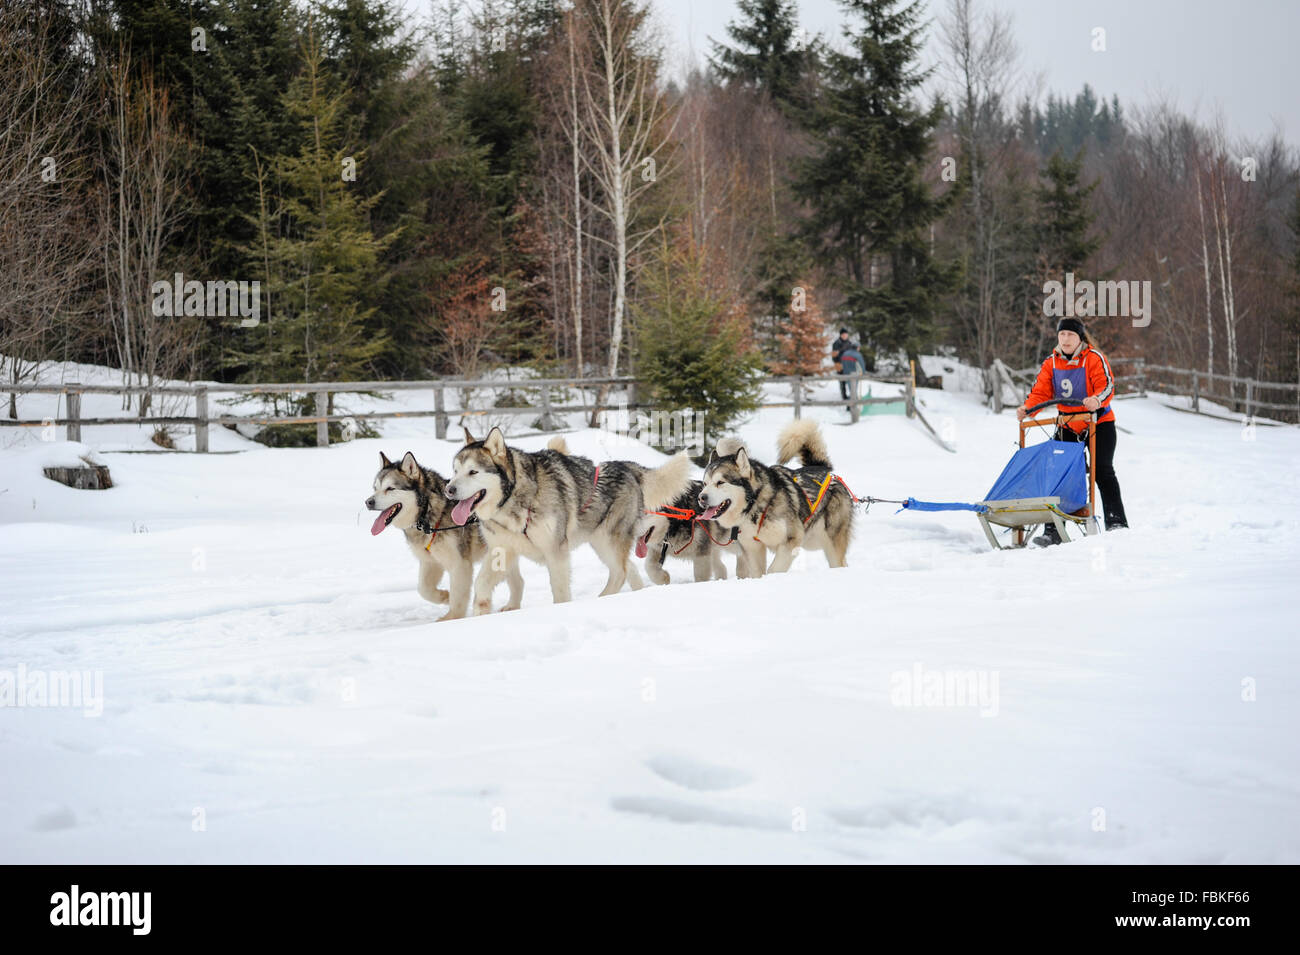 Les courses de chiens de traîneau avec Siberian Huskies, malamutes, samoyèdes, chiens nordiques. Photo prise en Transylvanie, Roumanie. Banque D'Images